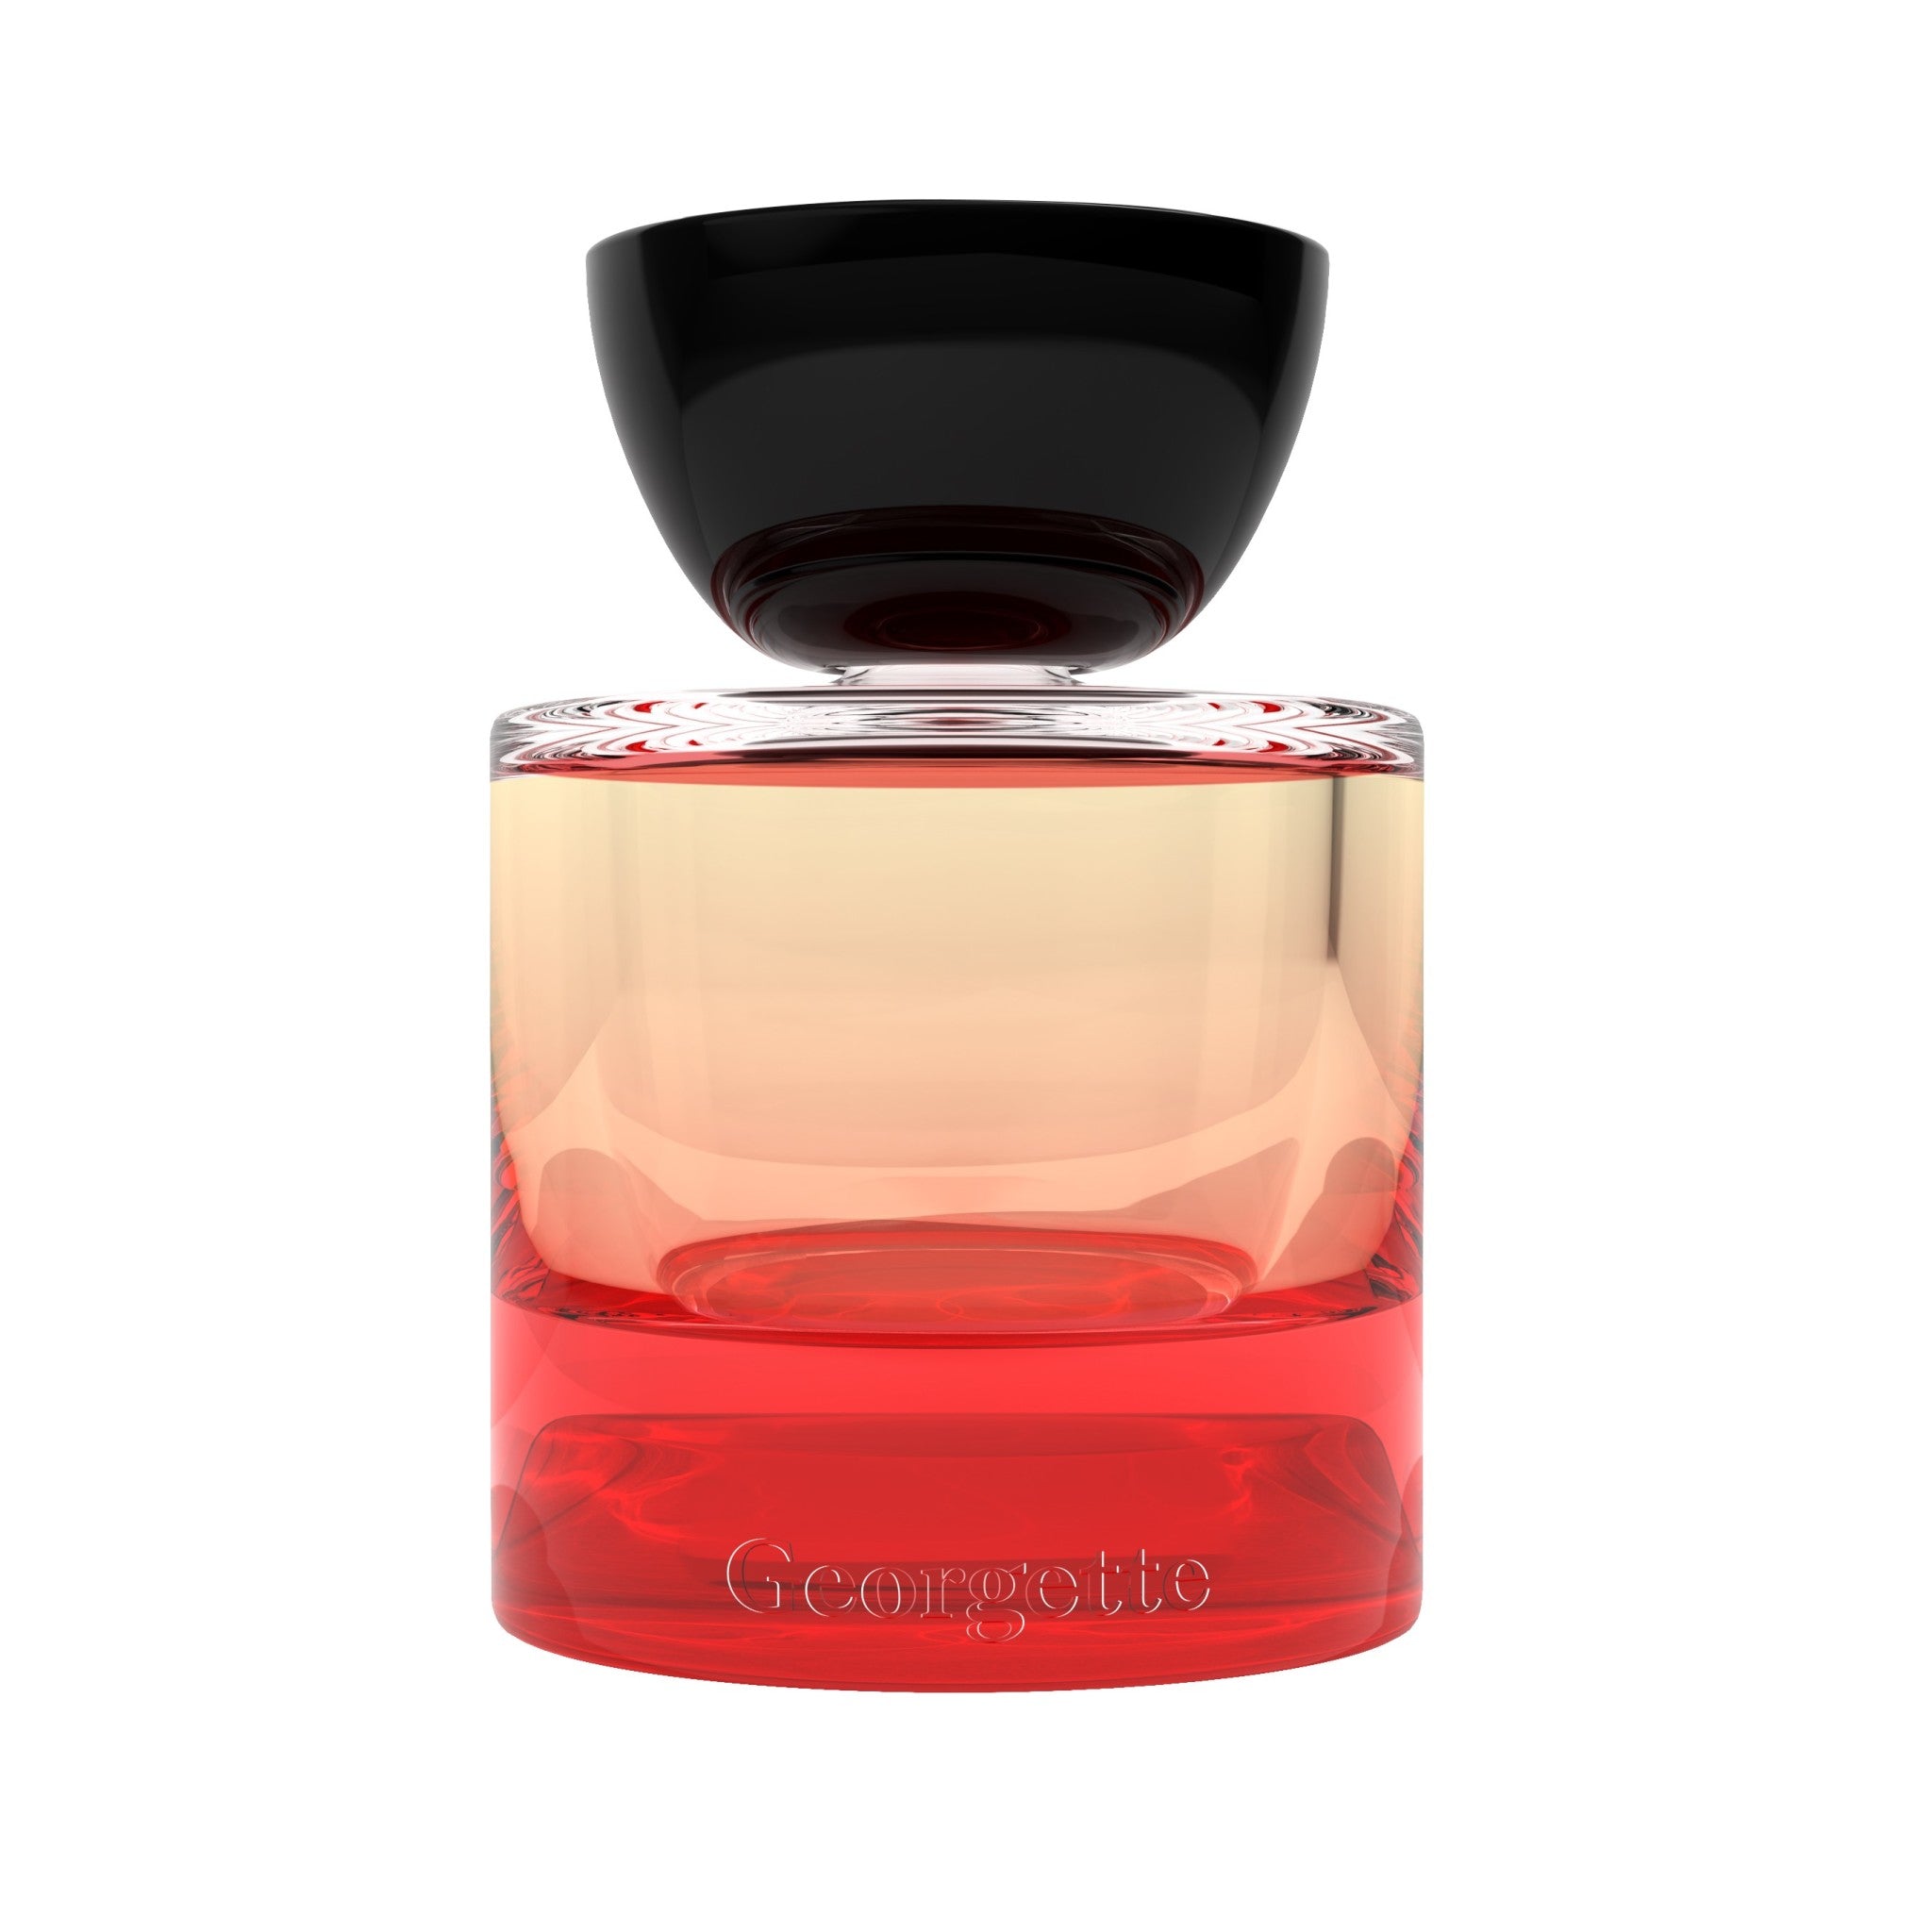 Vyrao Georgette Eau de Parfum Size variant: 1 fl oz main image.